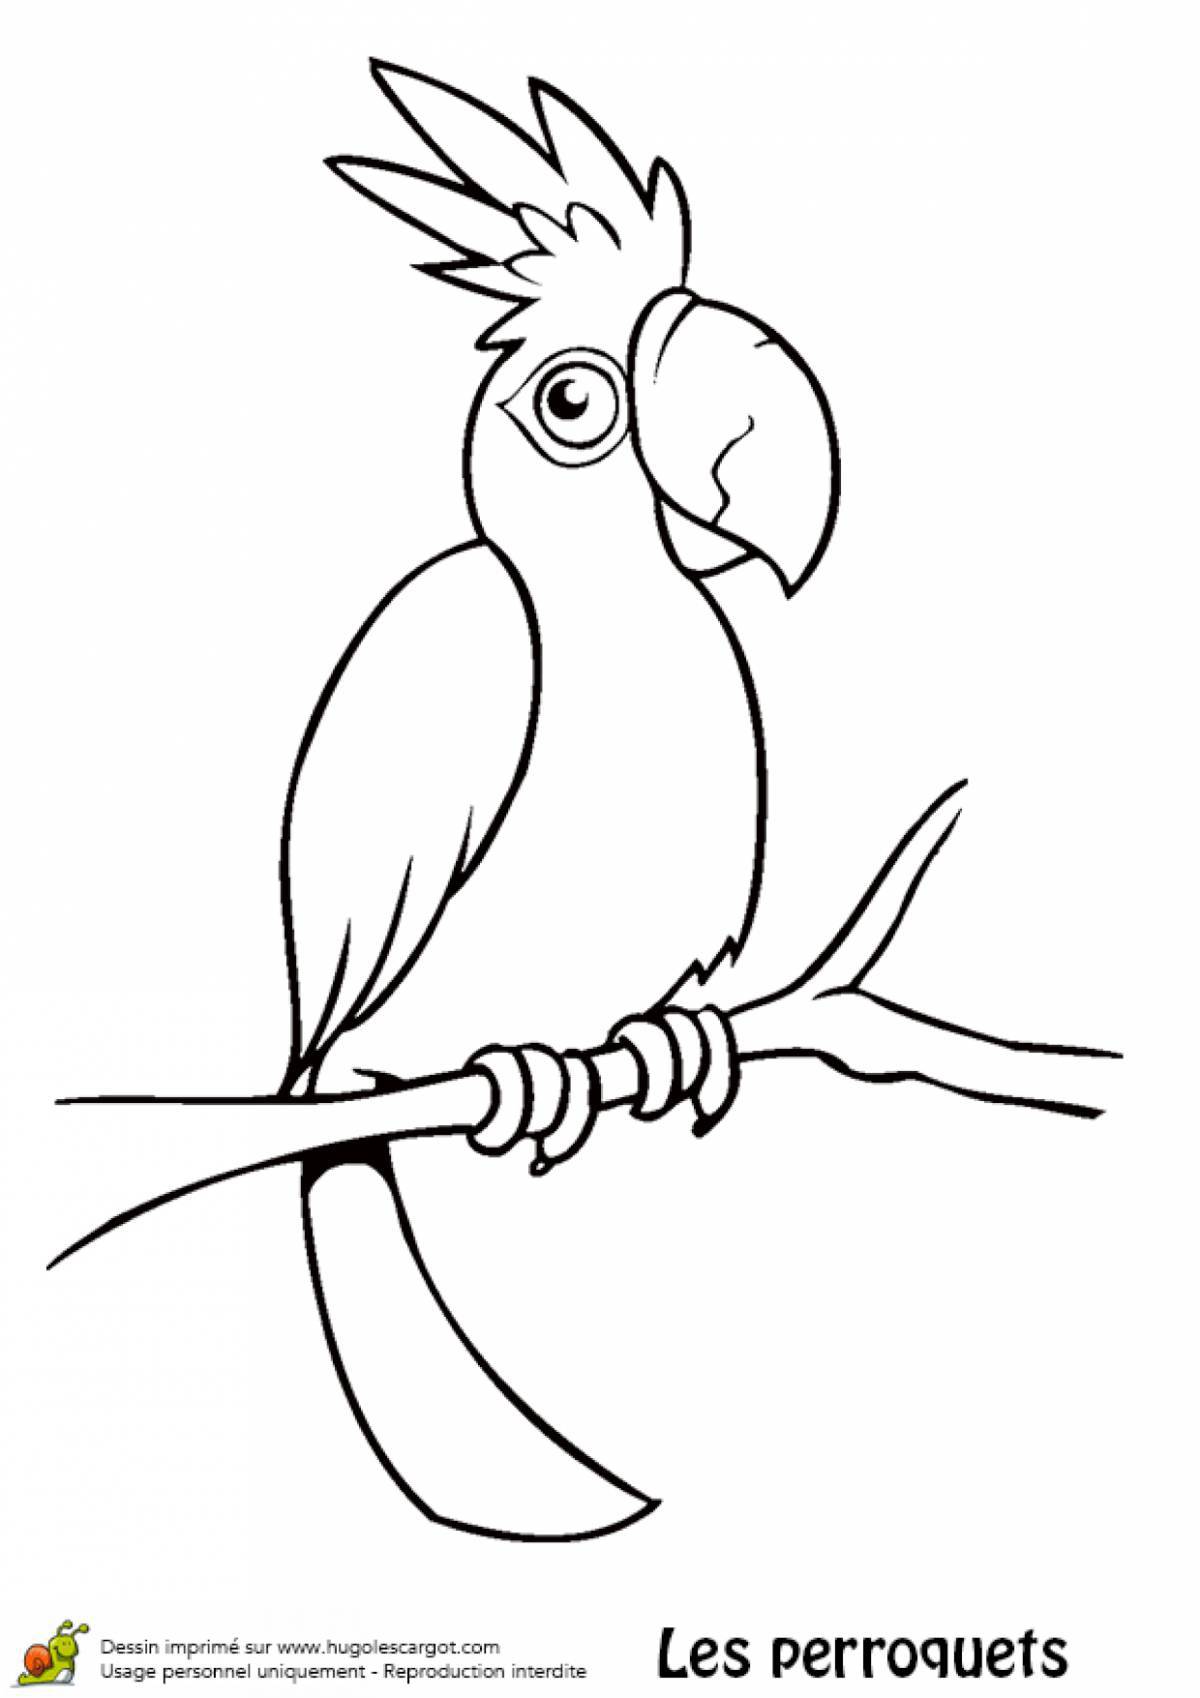 Живой попугай раскраски для детей